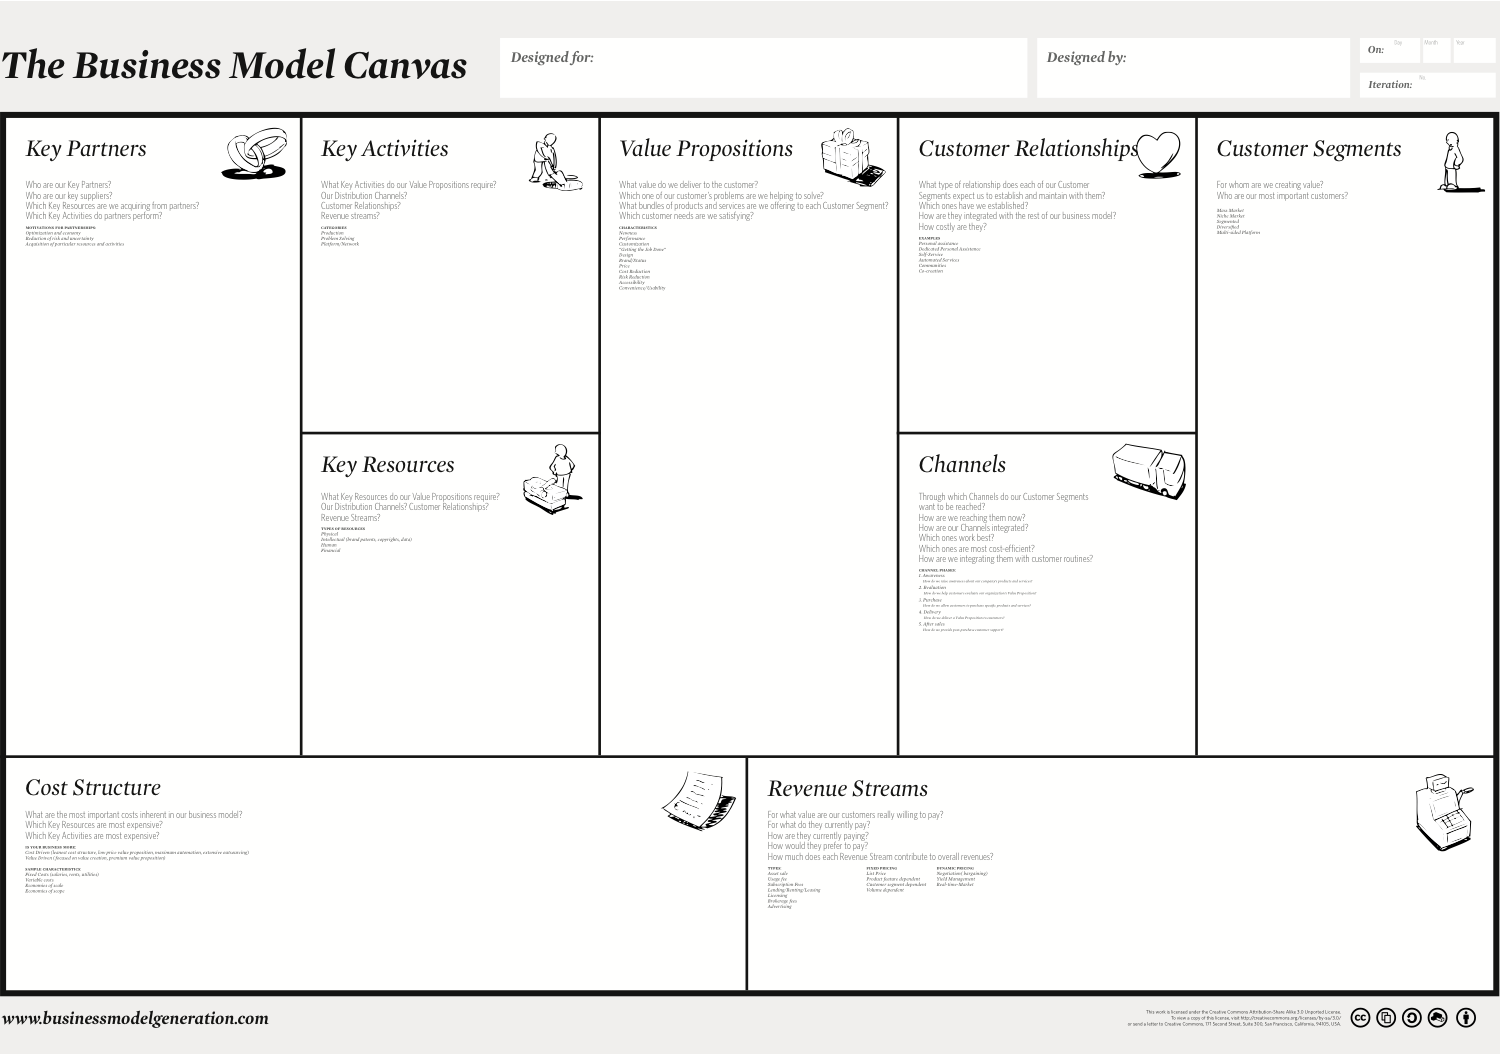 business model nouvelle génération pdf